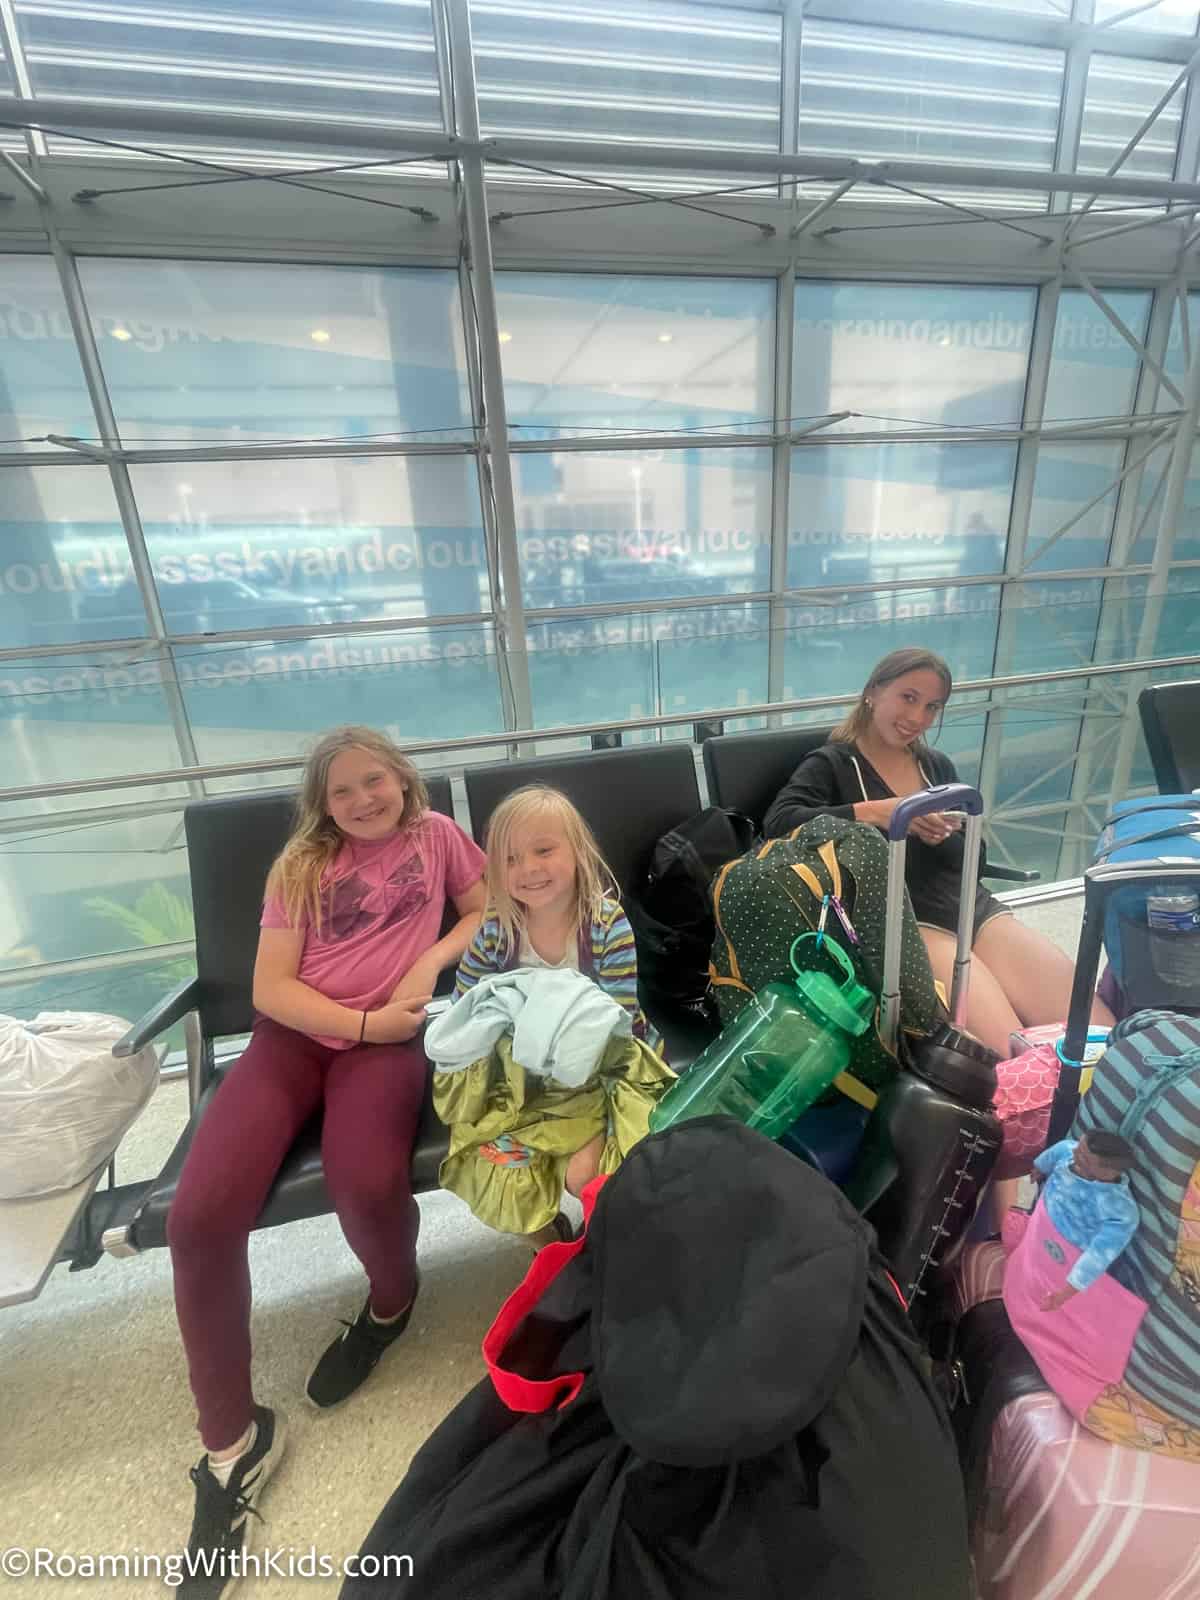 Children sitting in an airport